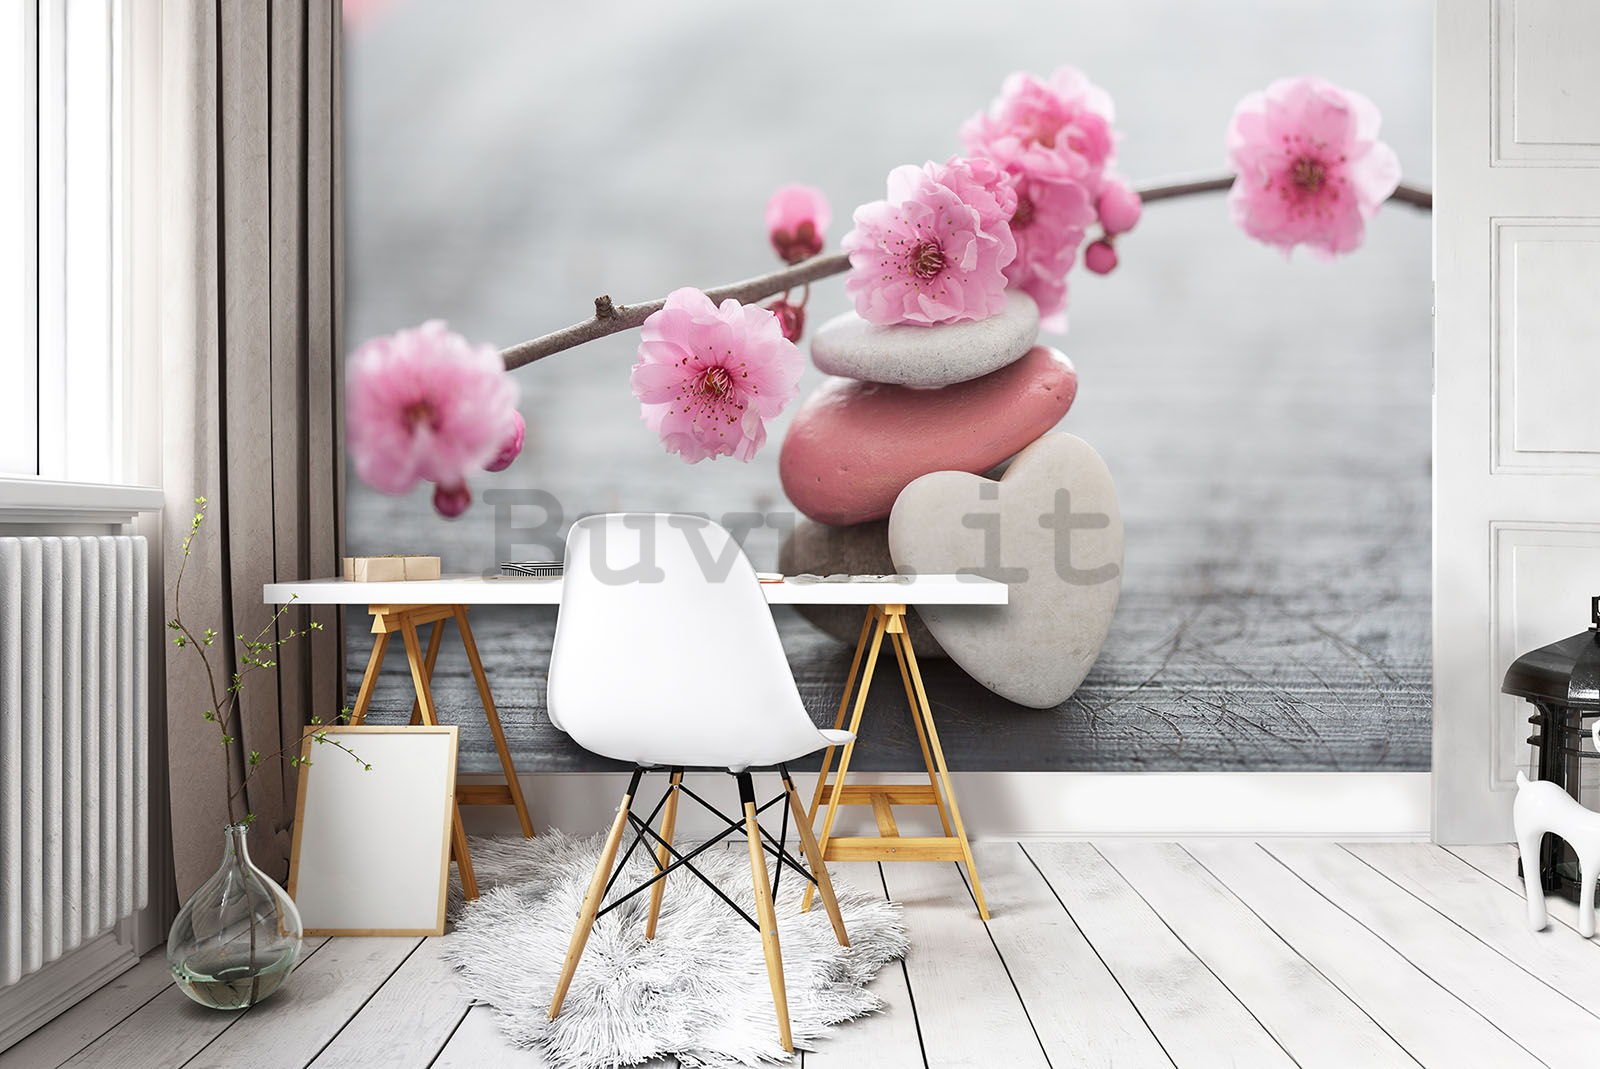 Fotomurale: Ciliegio in fiore e cuore - 184x254 cm